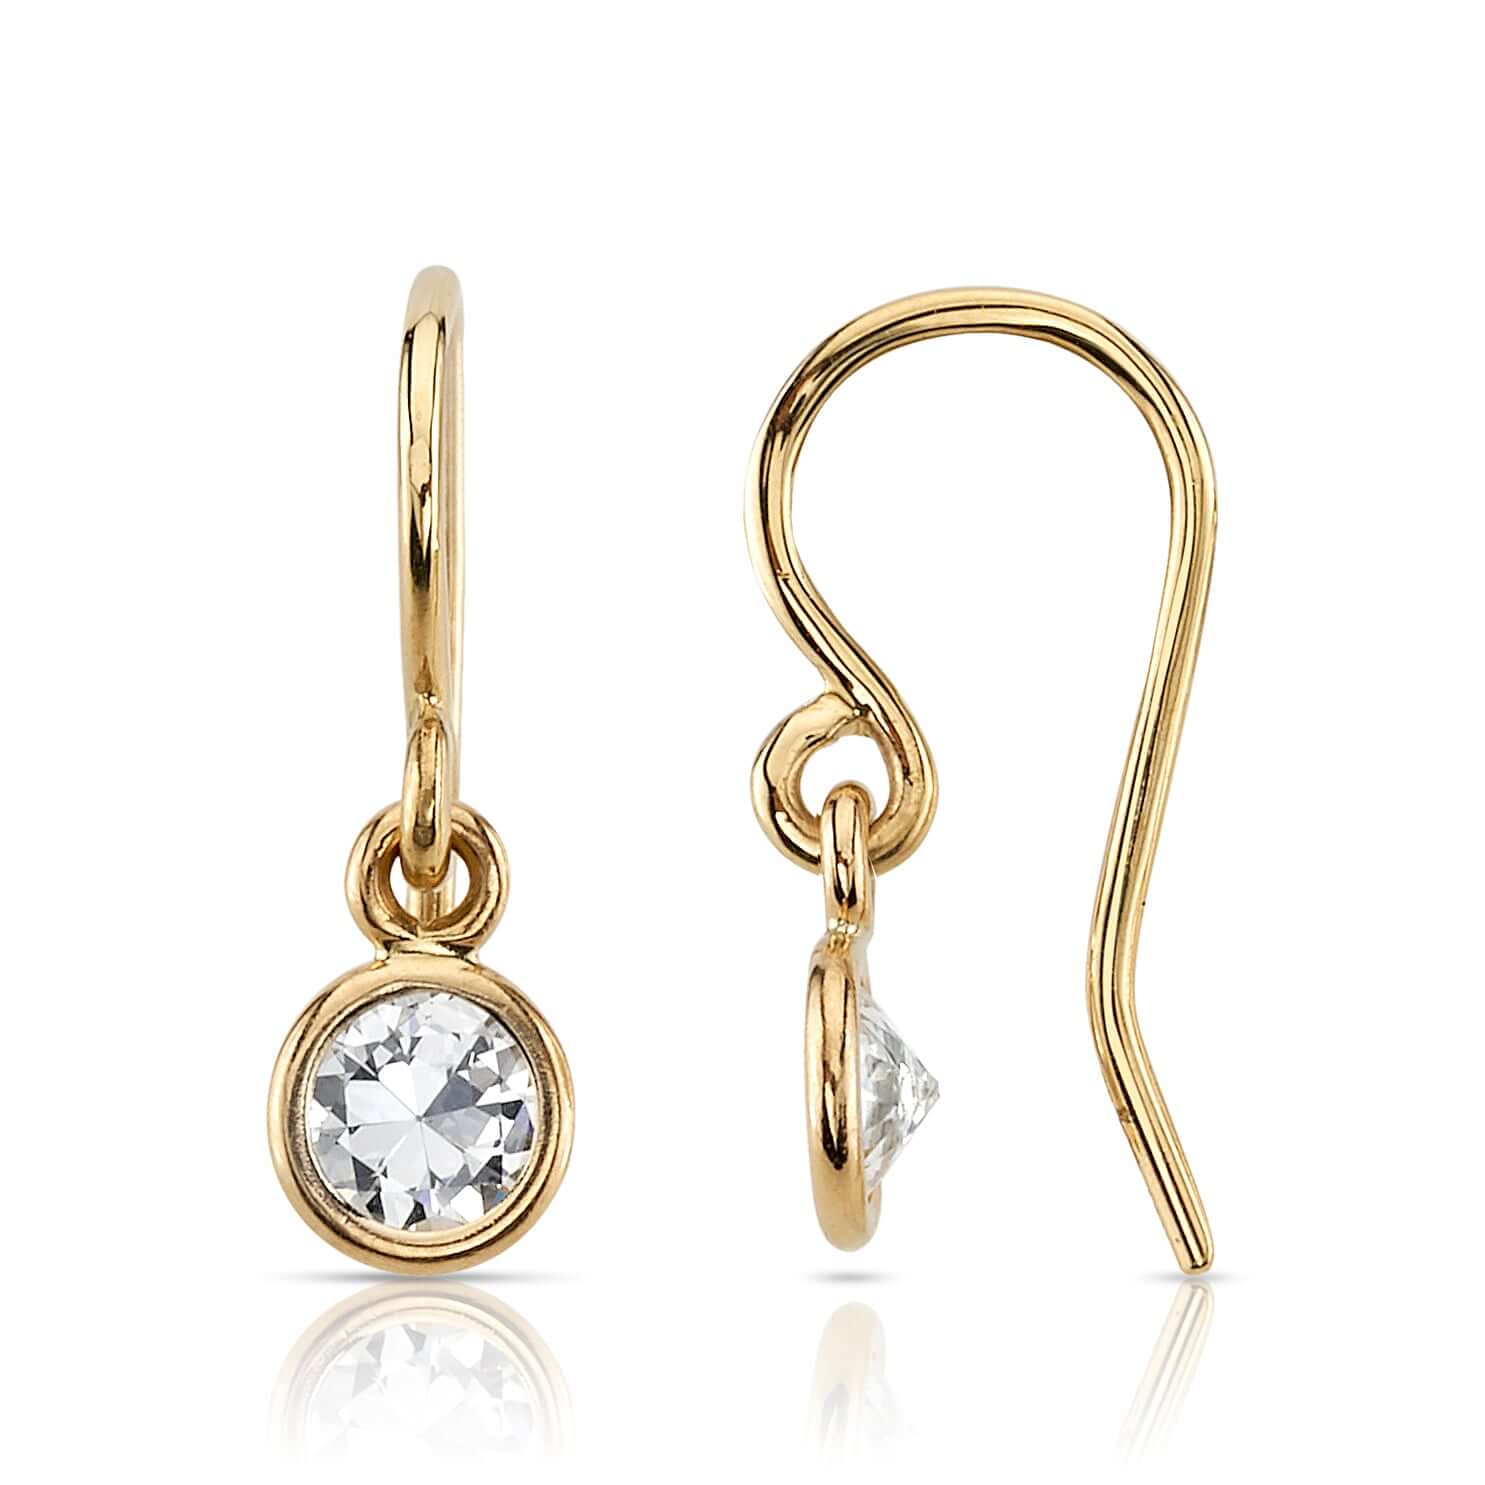 SINGLE STONE ANITA DROPS | Earrings featuring 0.93ctw J-K/SI old European cut diamonds bezel set in handcrafted 18K yellow gold drop earrings.